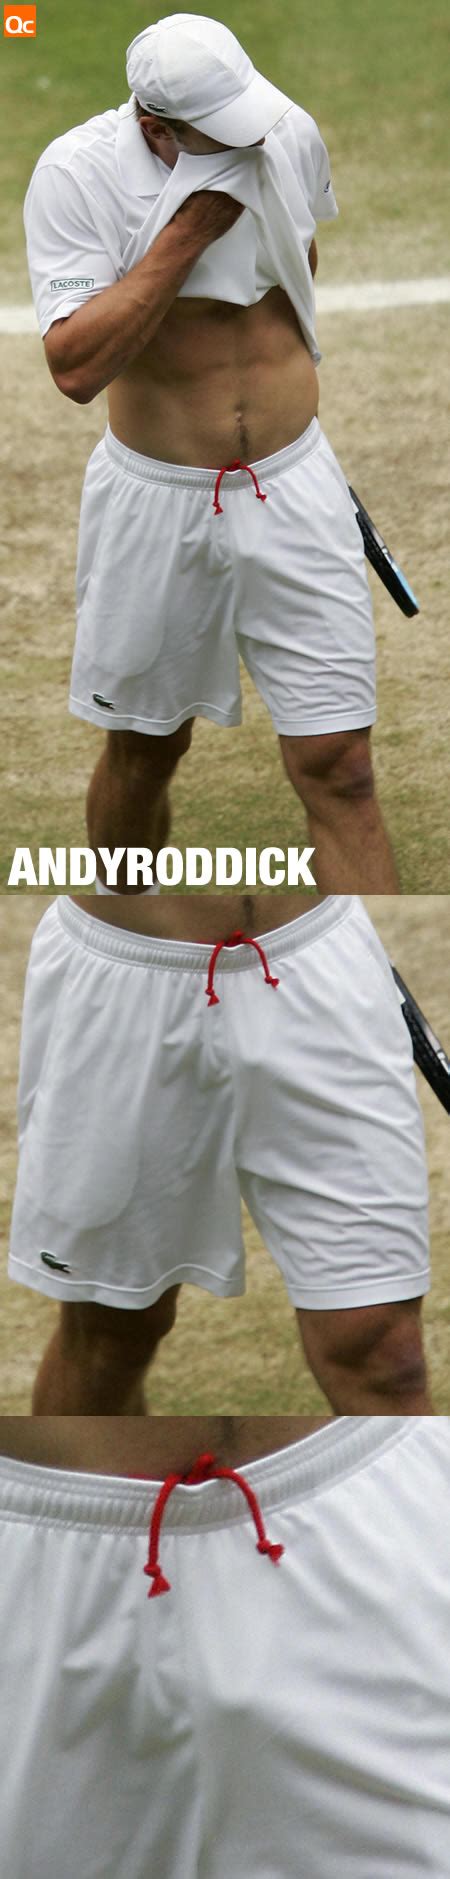 Andy Roddick Dick Slip Big Natural Porn Star